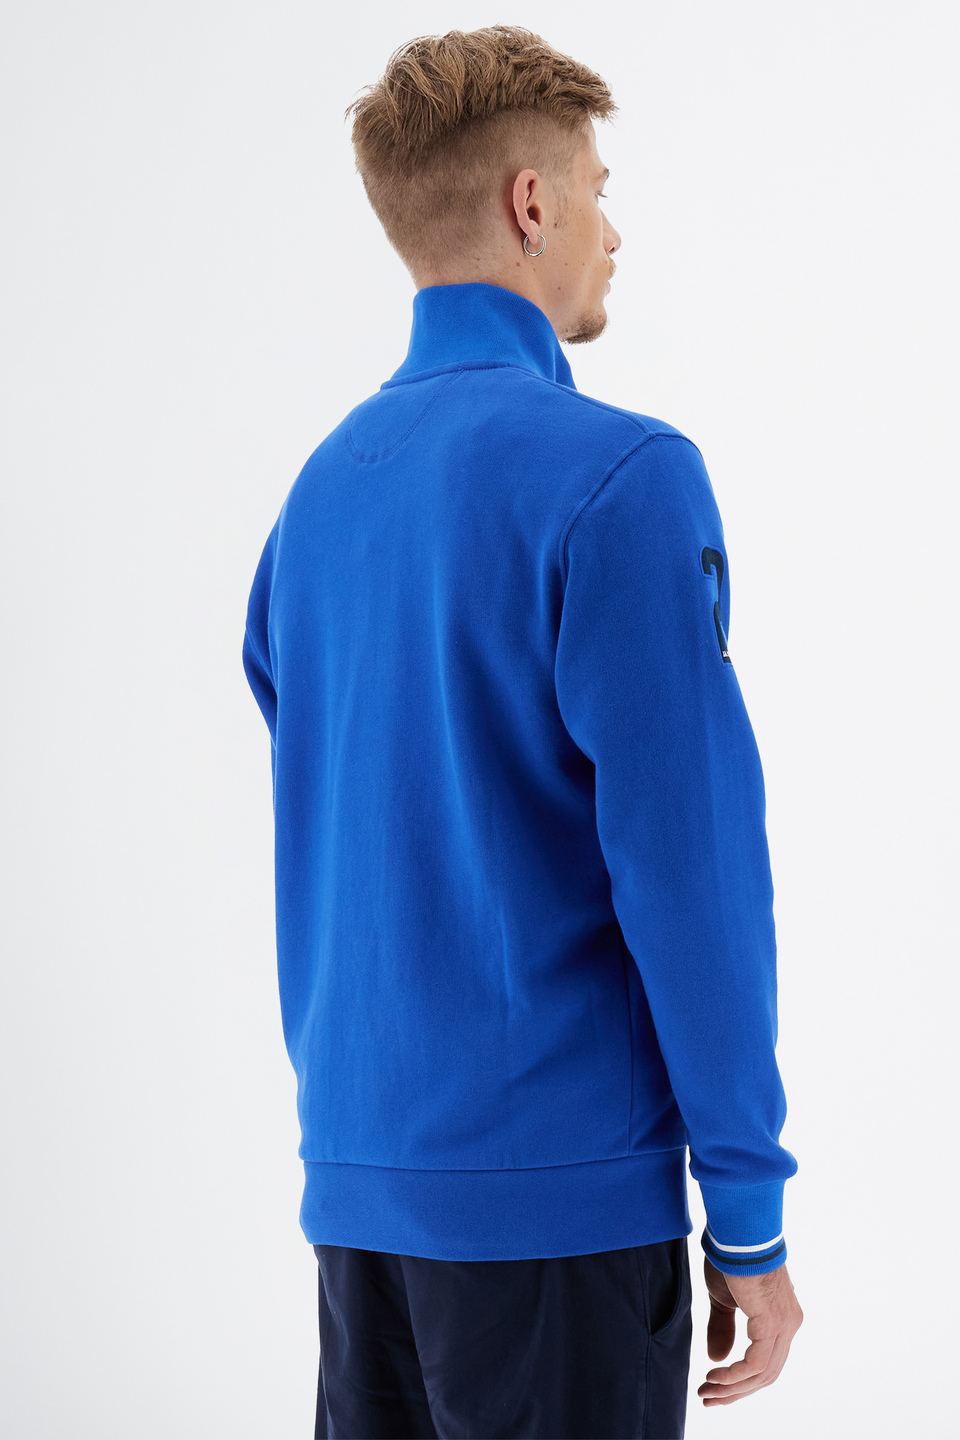 Essential Herren-Sweatshirt aus Baumwoll-Mix mit durchgehendem Reißverschluss | La Martina - Official Online Shop